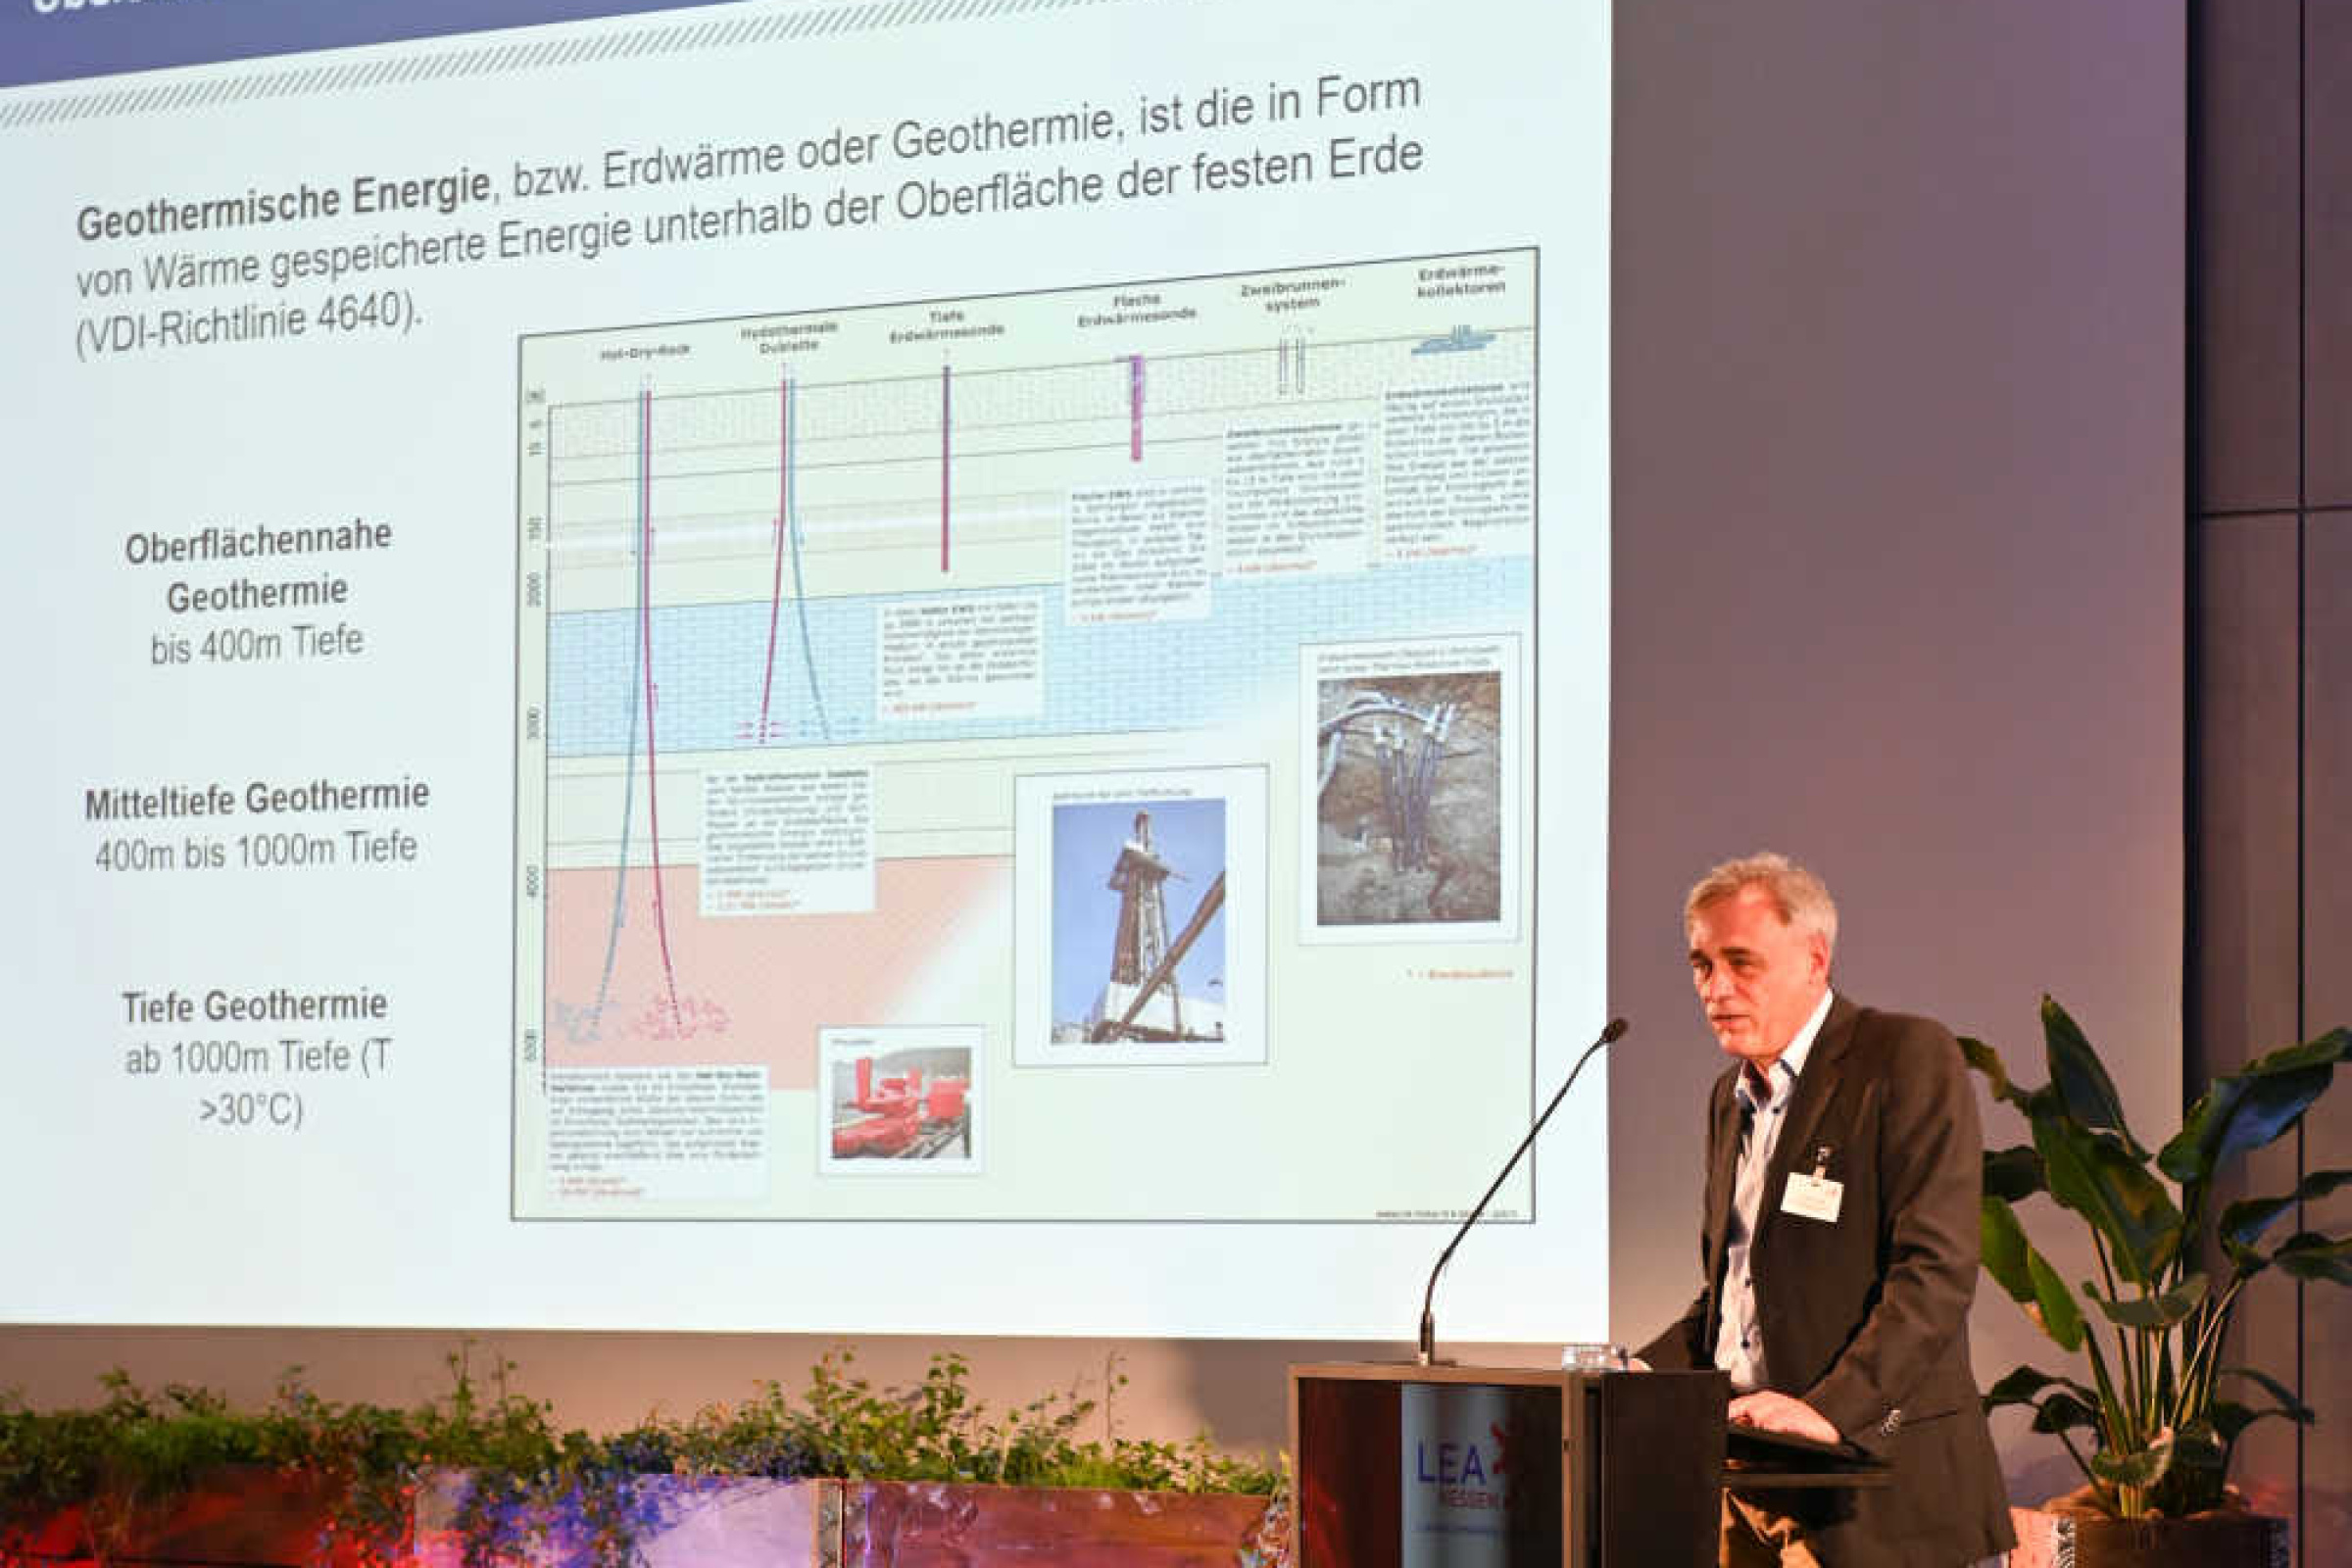 Ein Mann steht an einem Rednerpult neben einem Großbildschirm, auf dem eine Übersicht über geothermische Energie dargestellt ist.